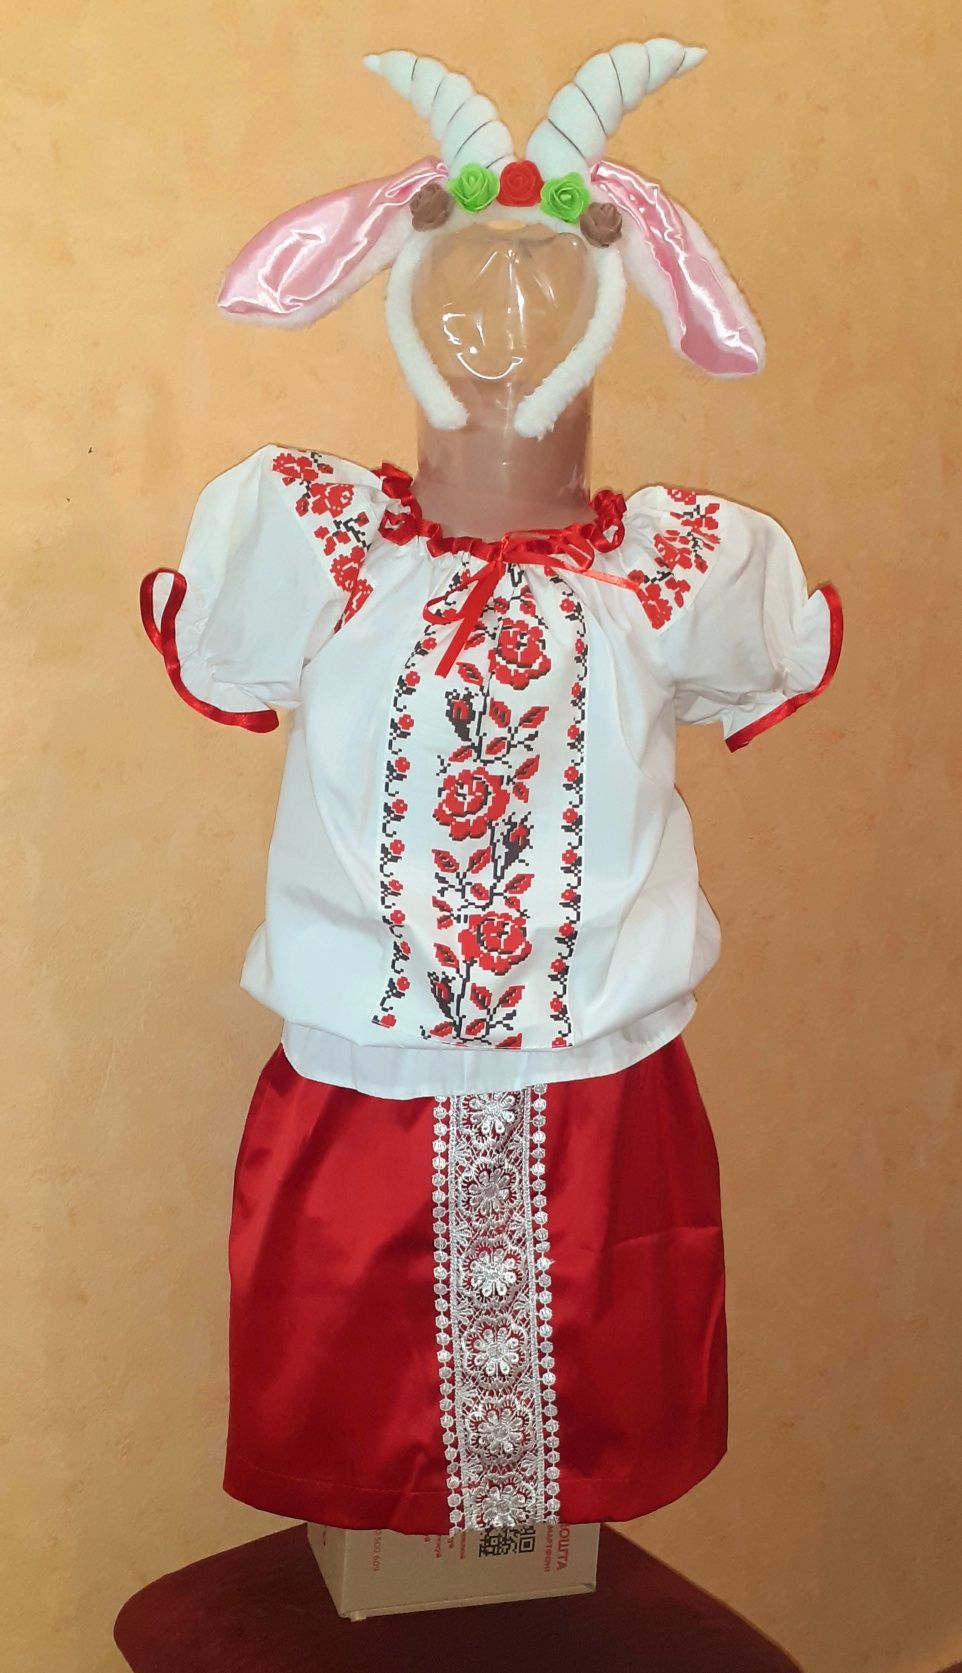 Украинский костюм школьнику 6 - 9 лет обруч коза Дереза вышиванка юбка